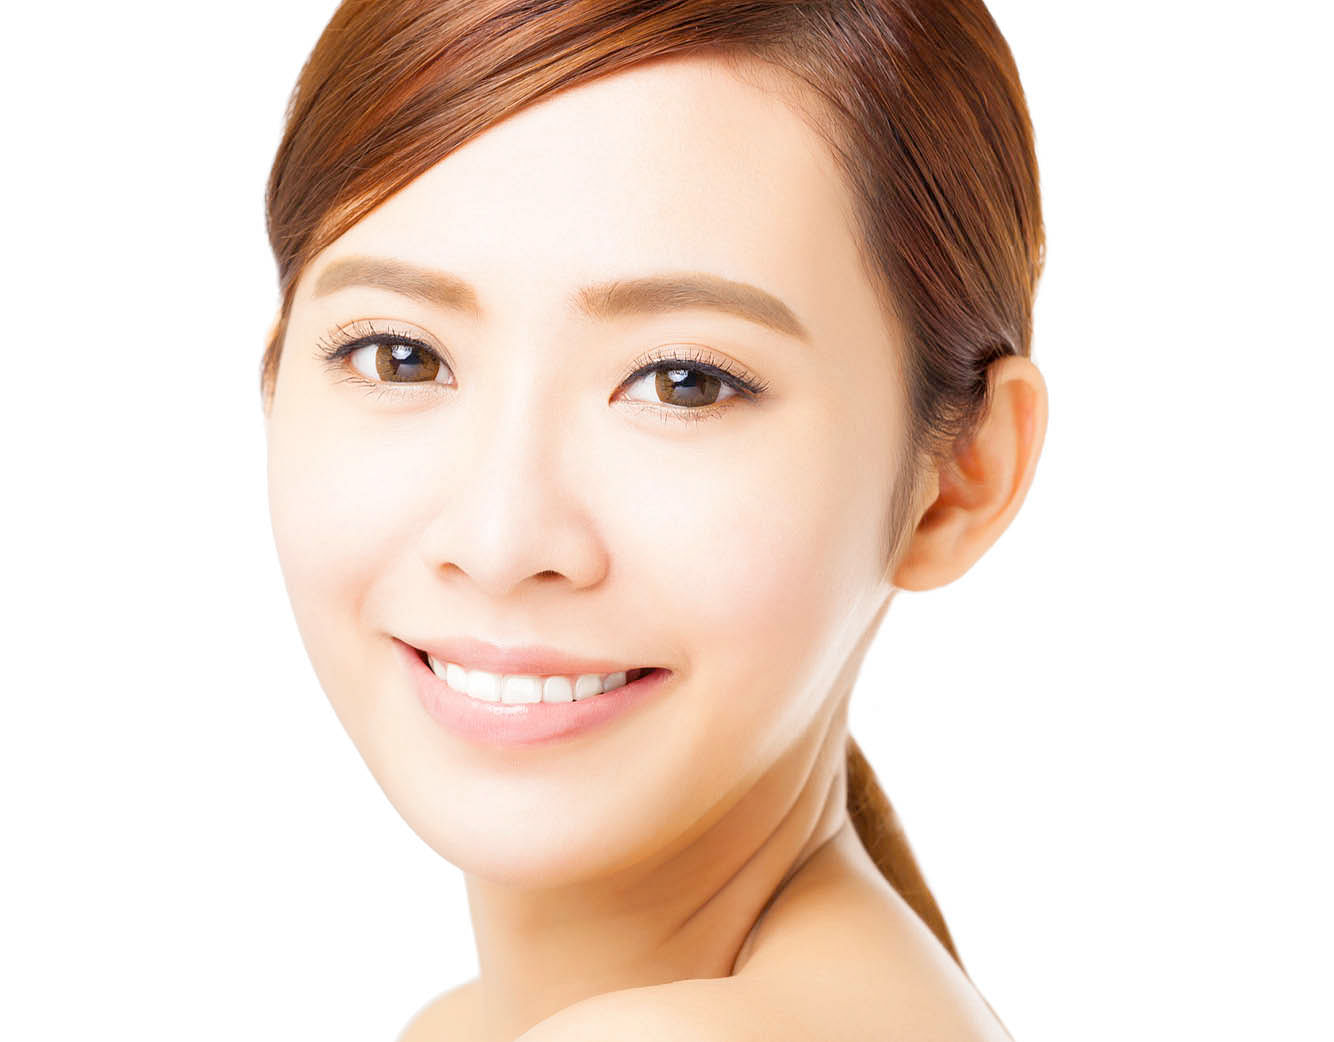 Singapore makeup artist, Larry Yeo, makeup, beautiful eyes, big eyes, makeup tricks, makeup tips